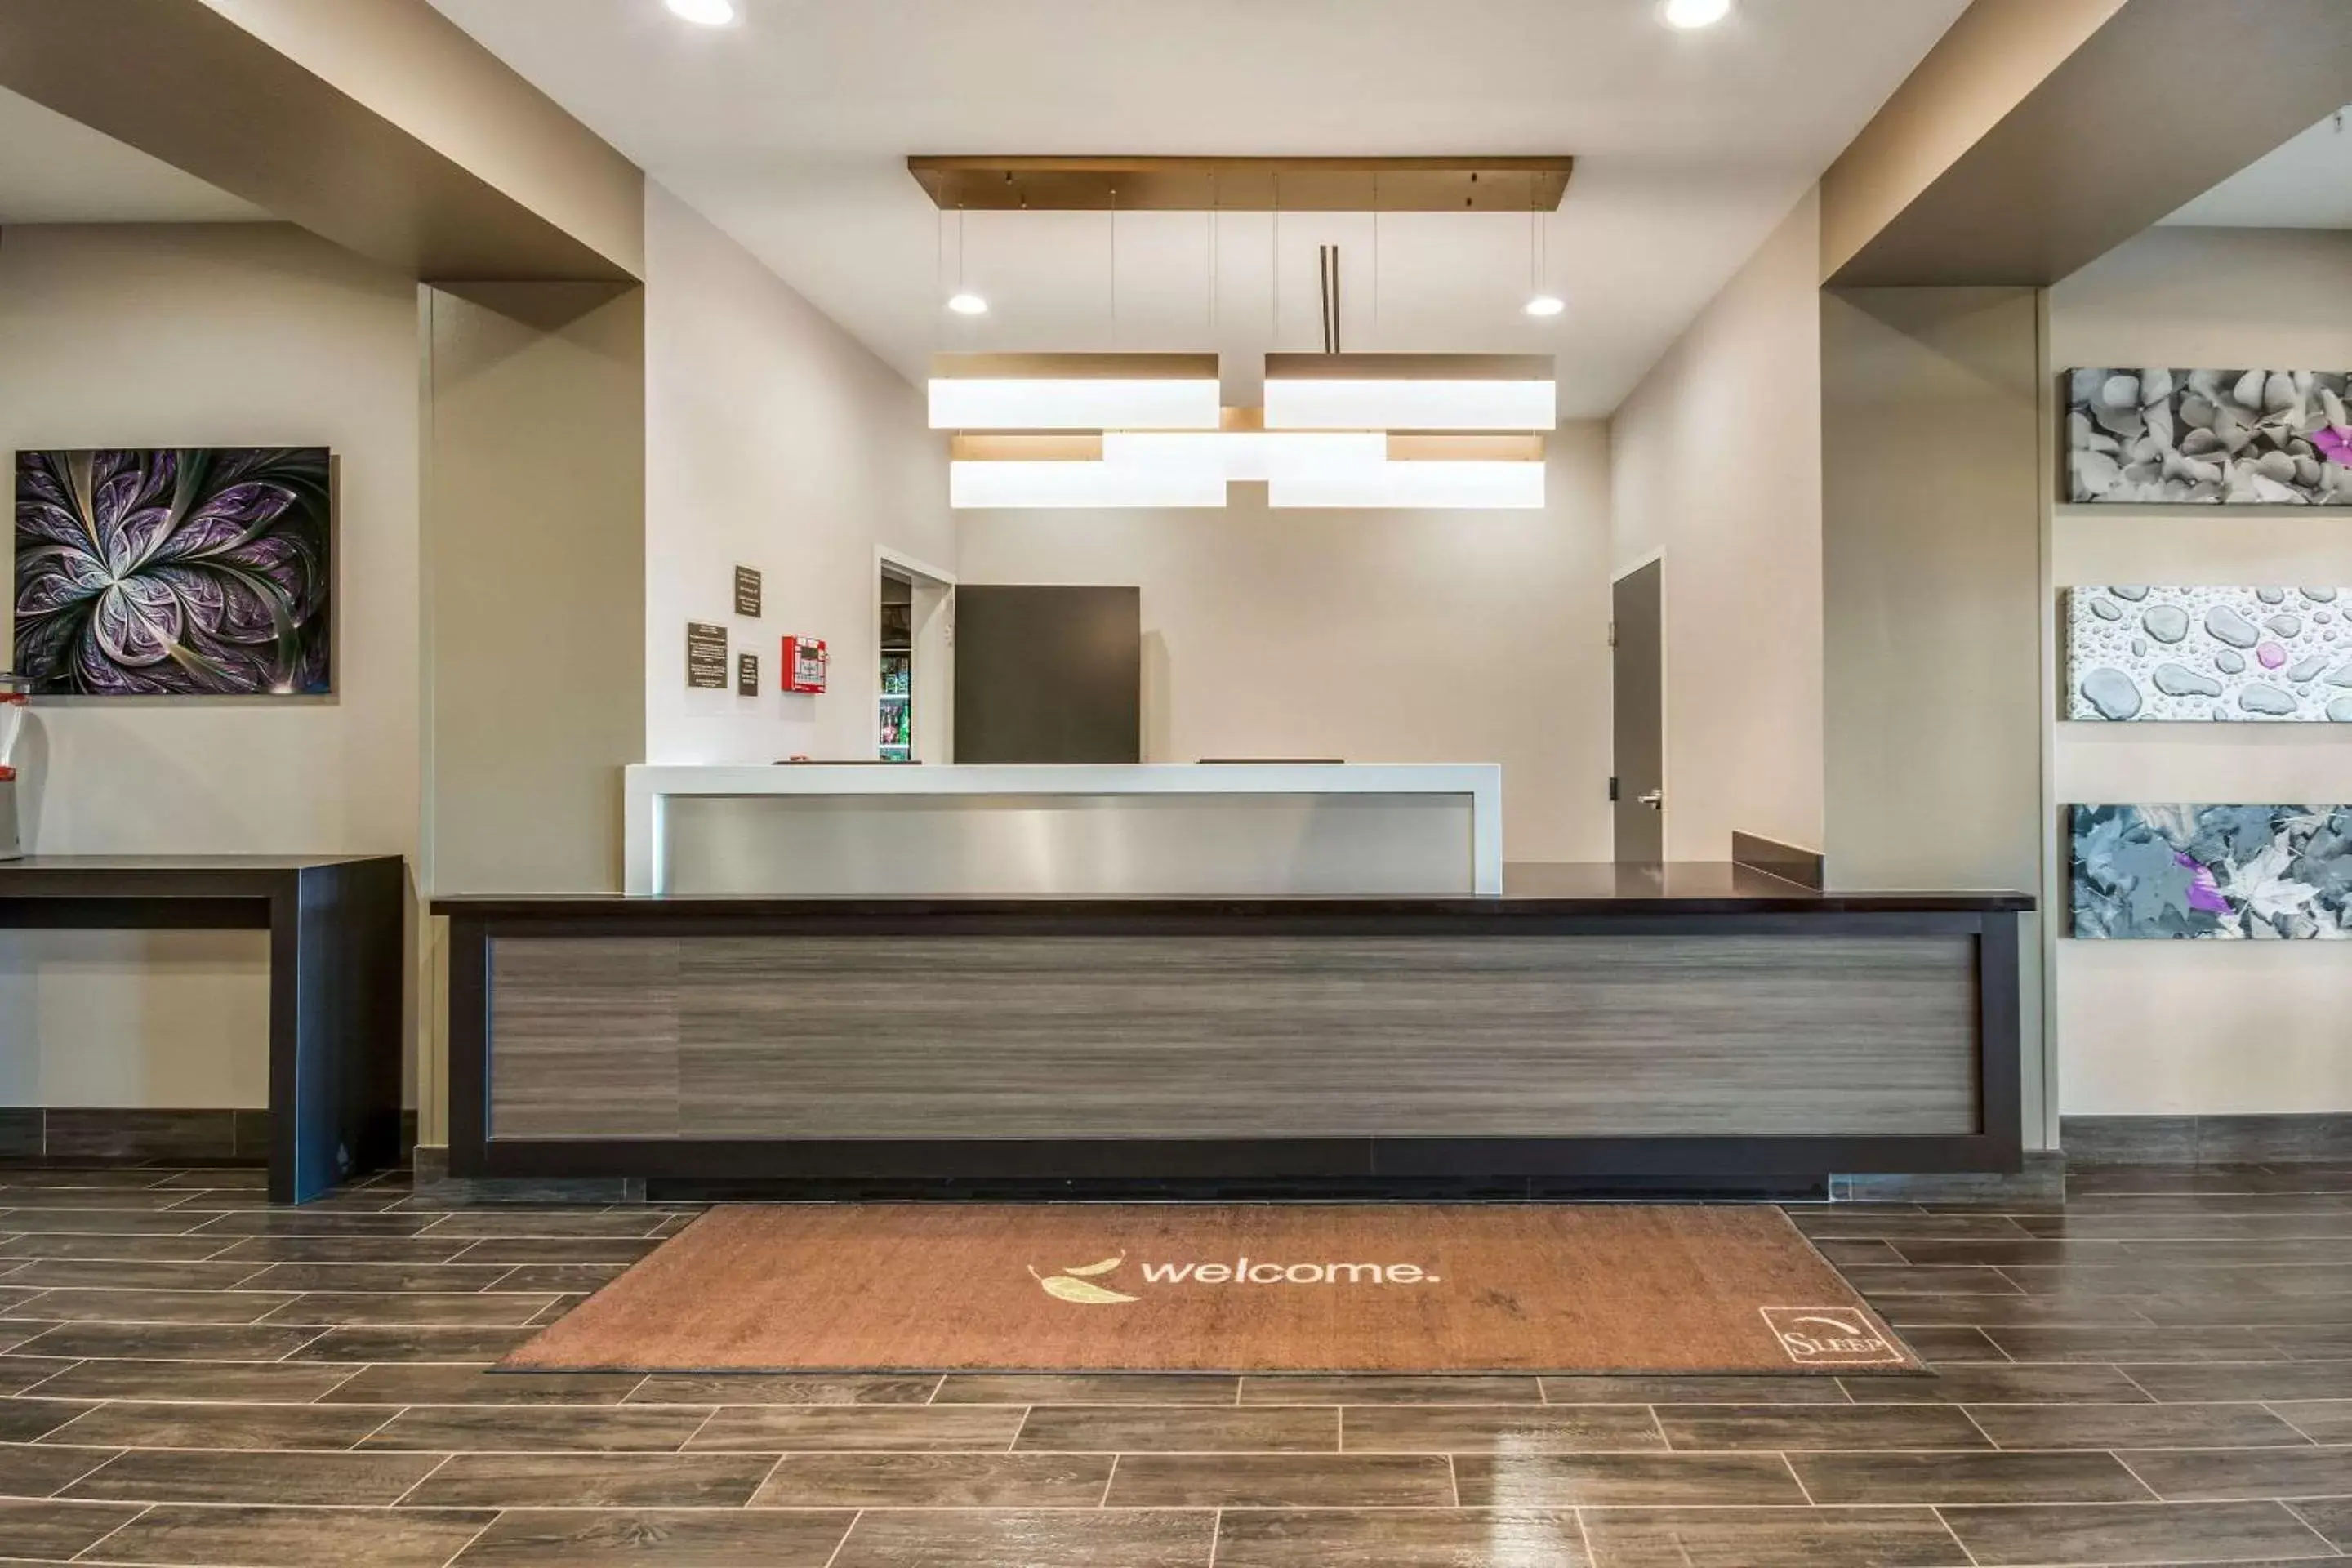 Lobby or reception, Lobby/Reception in Sleep Inn & Suites Yukon Oklahoma City